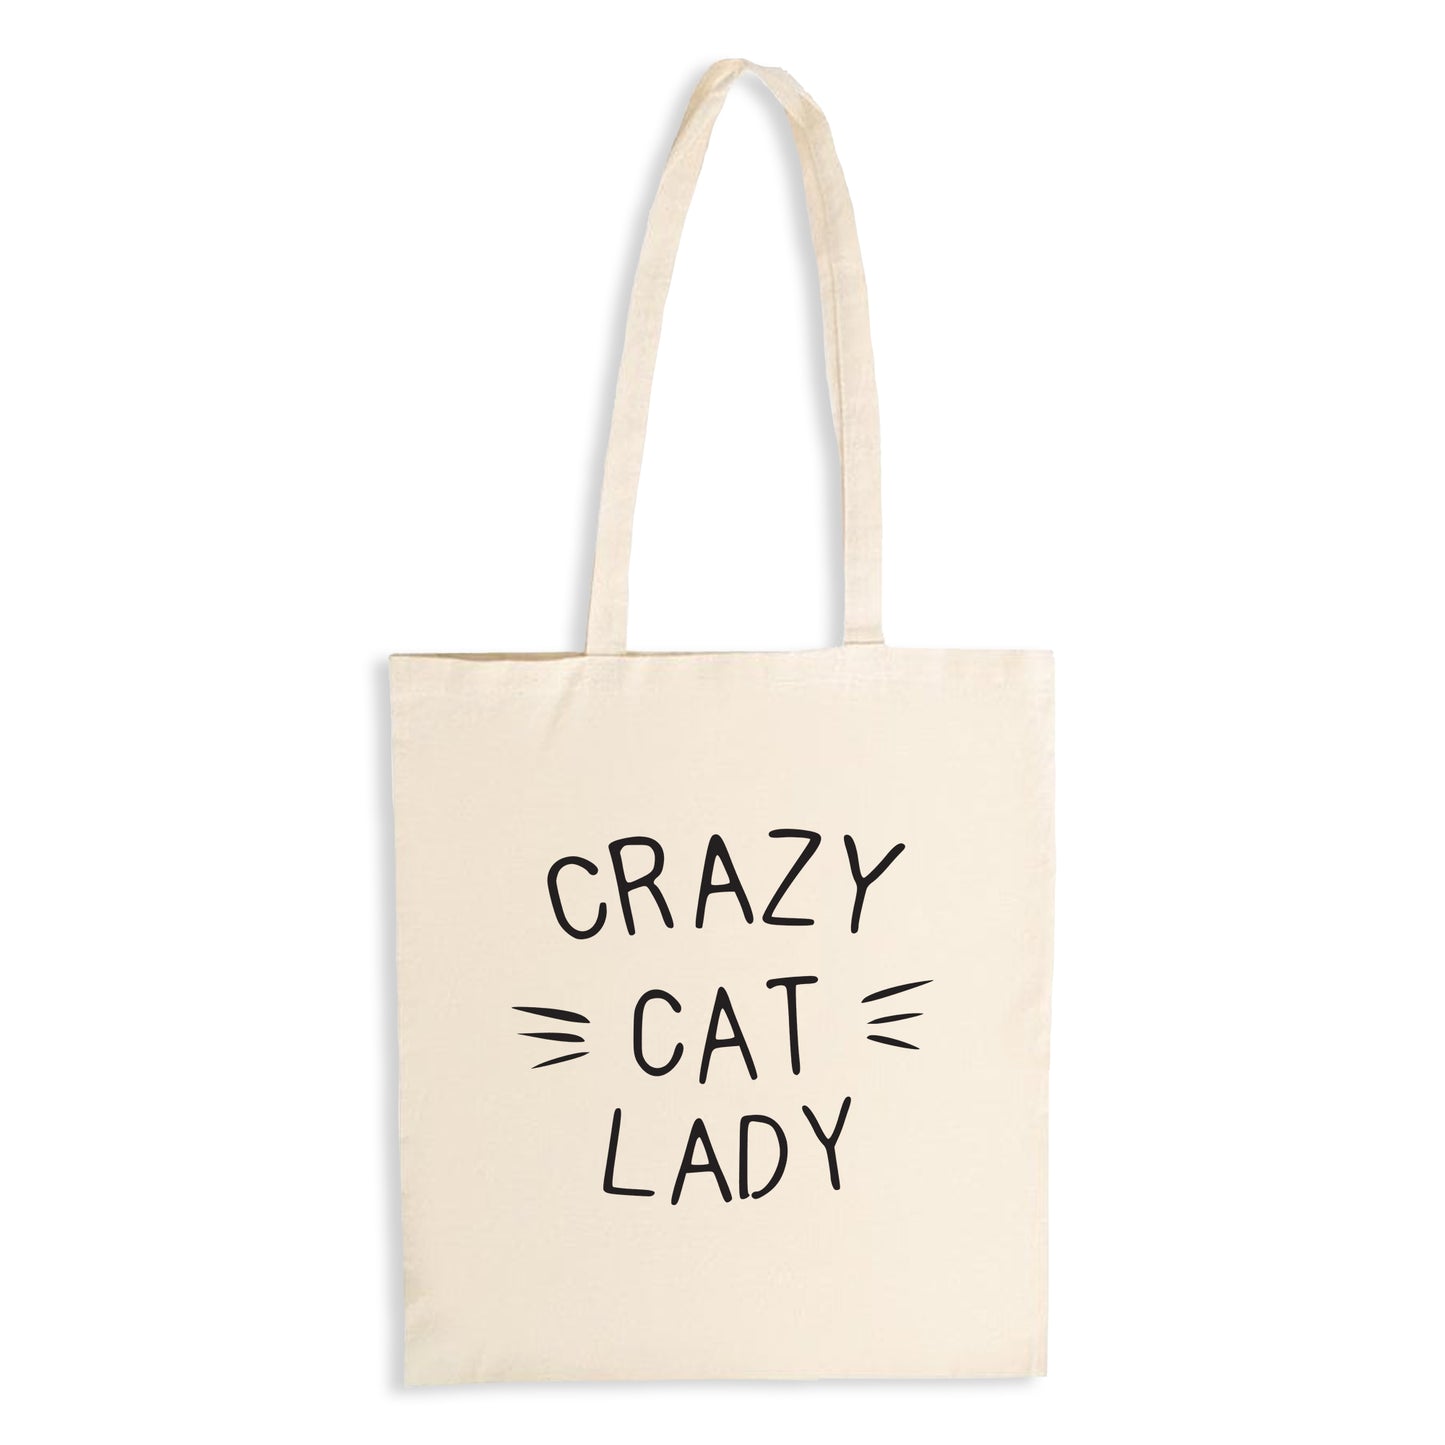 Crazy Cat Lady - Natural Tote Bag